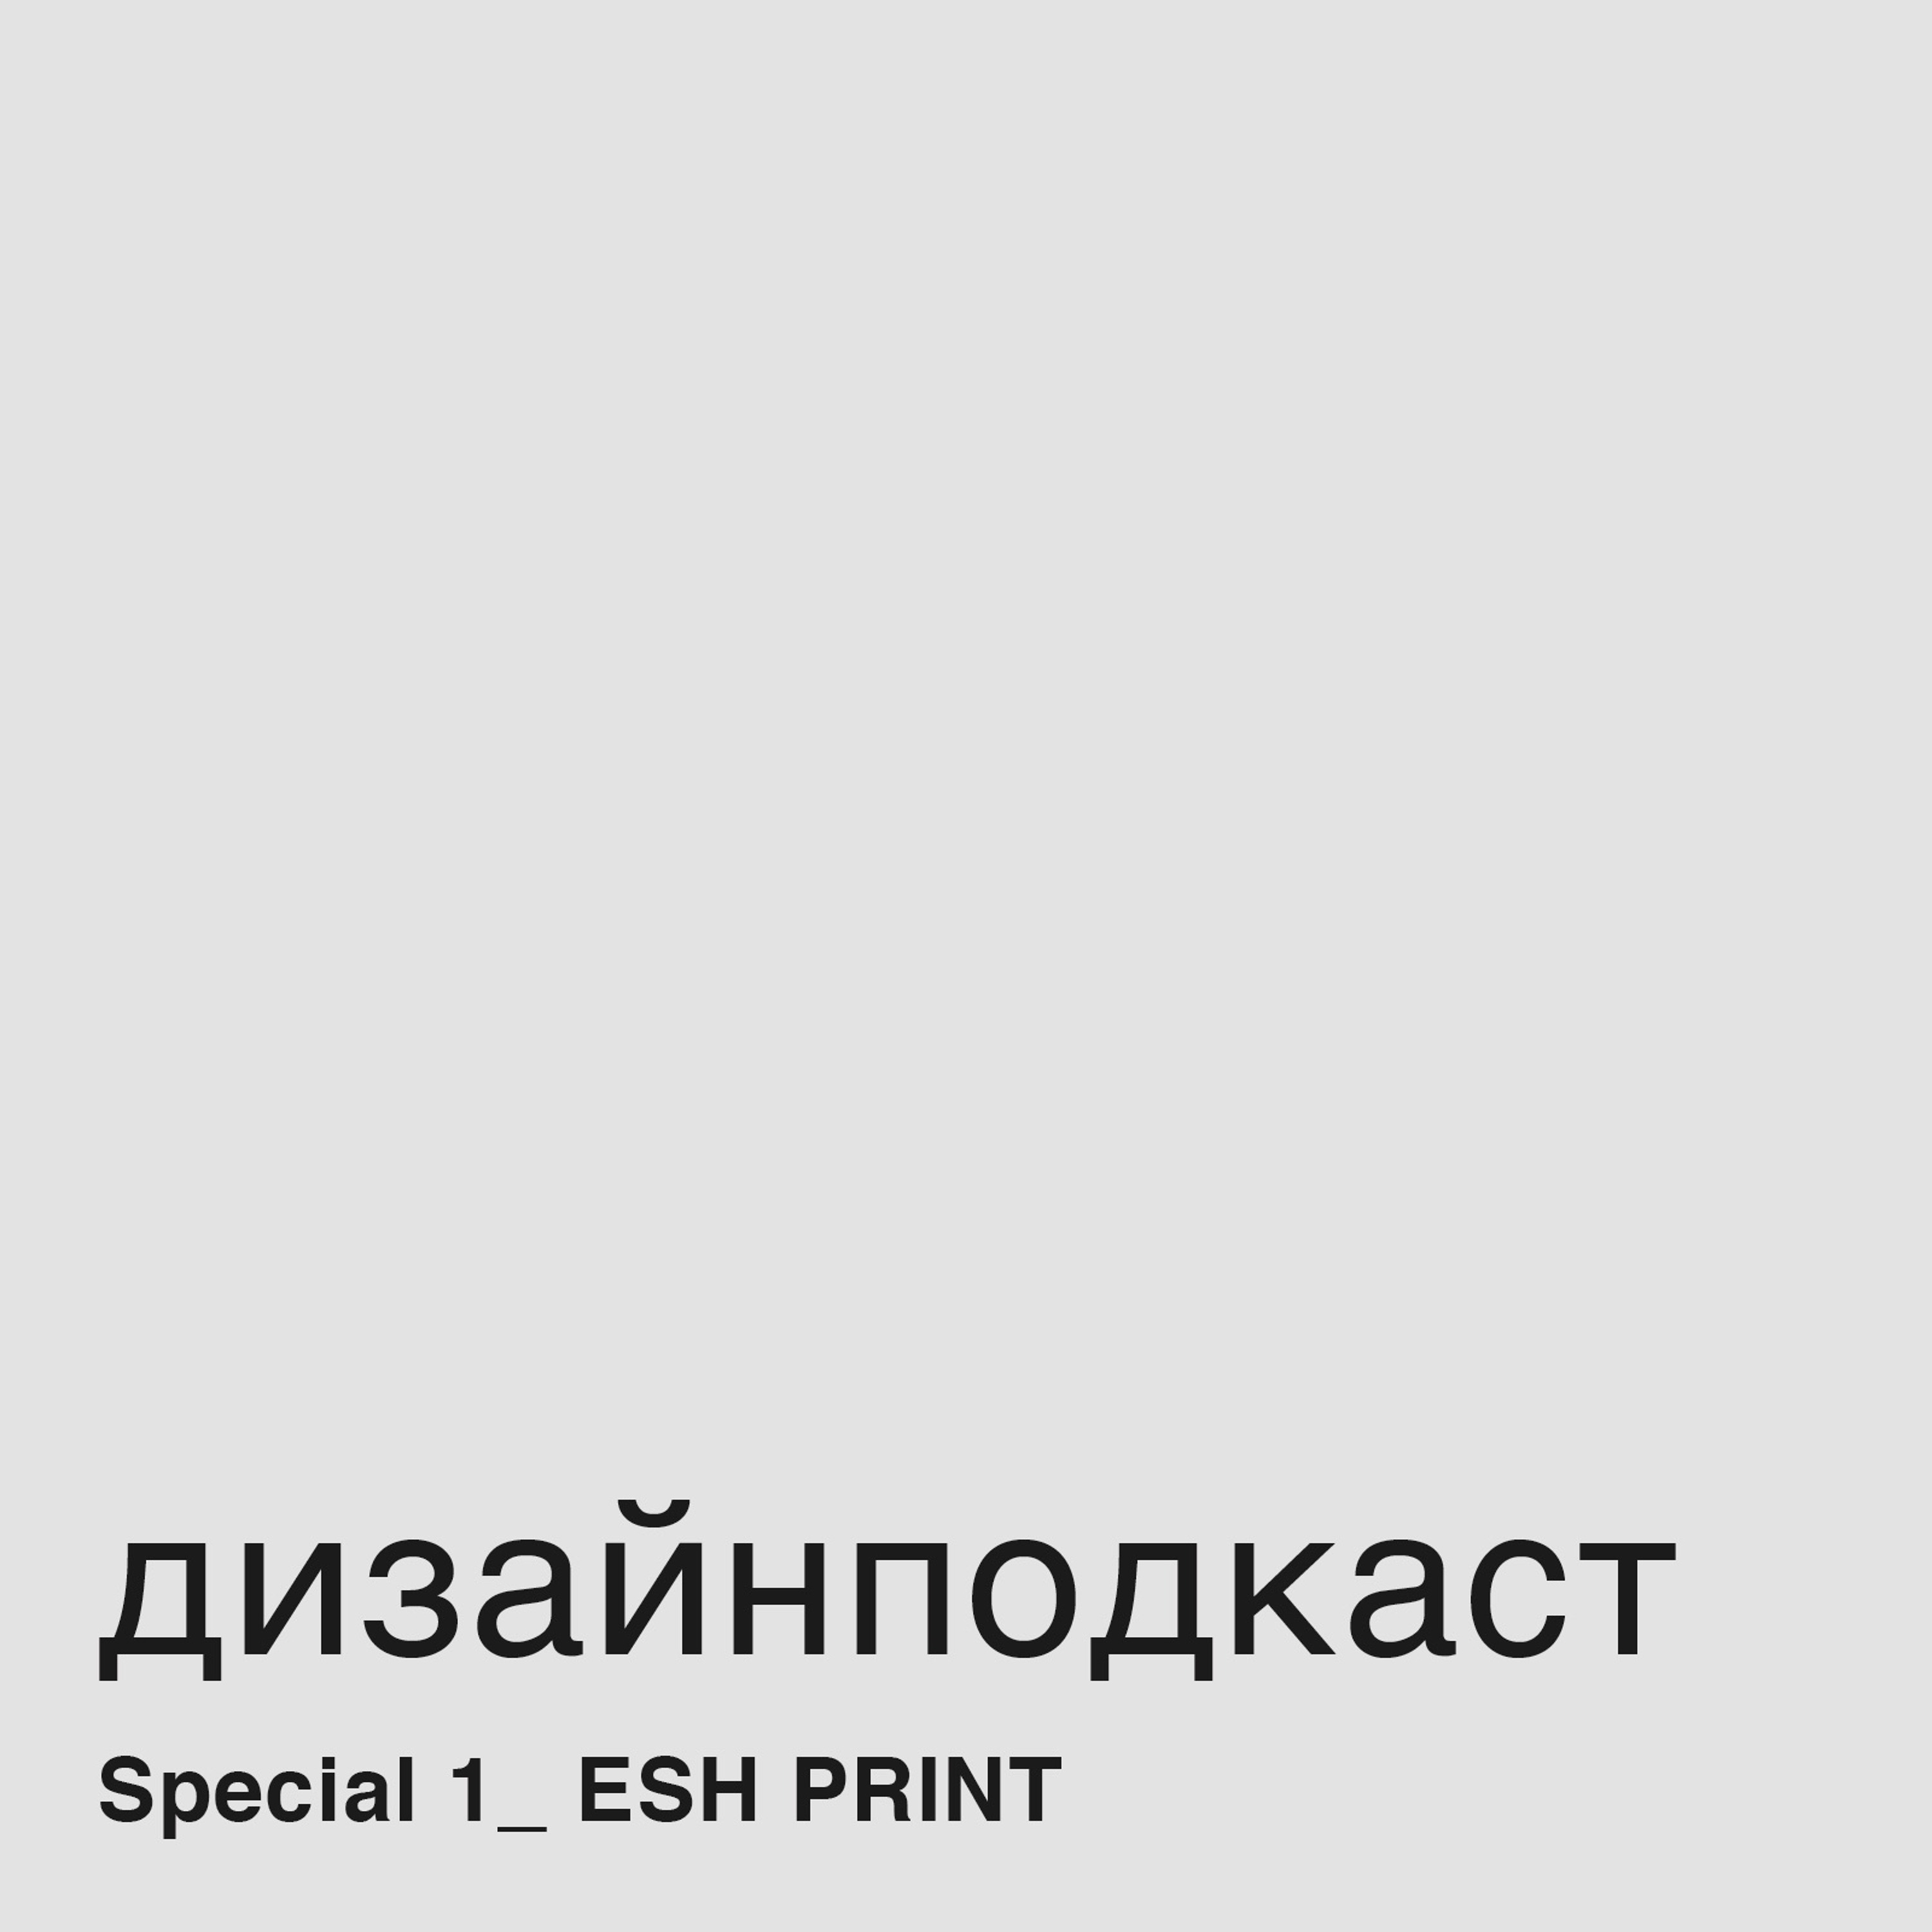 Дизайнподкаст Special_1. ESH Print